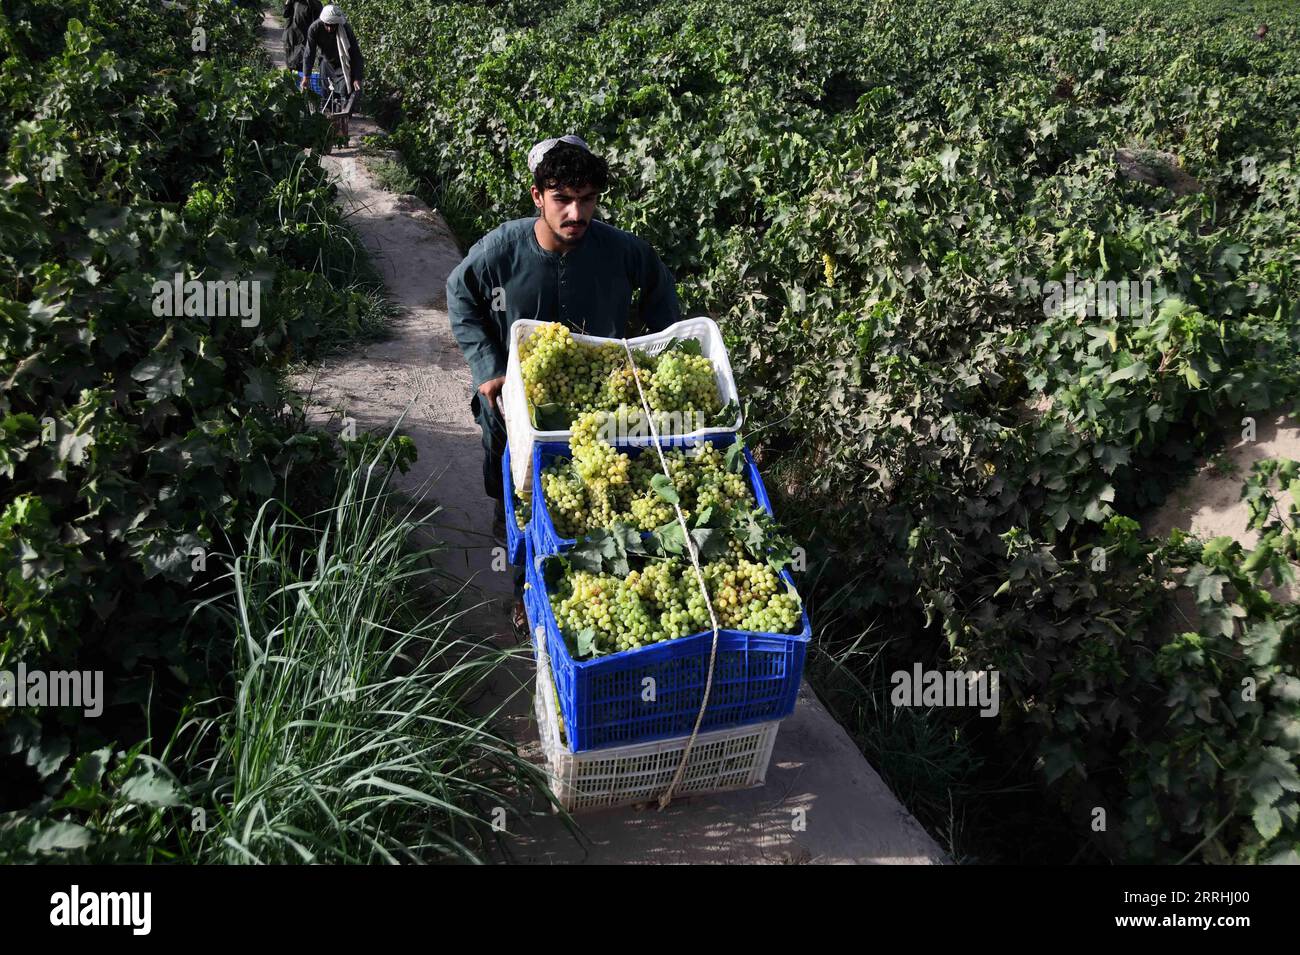 220702 -- KANDAHAR, 2 luglio 2022 -- Un agricoltore lavora in un vigneto nel distretto di Zhari nella provincia di Kandahar, Afghanistan meridionale, 2 luglio 2022. Secondo i funzionari locali, circa 250.000 tonnellate di uva sarebbero raccolte da frutteti su 20.500 ettari di terreno nella provincia di Kandahar, Afghanistan. Foto di /Xinhua AFGHANISTAN-KANDAHAR-VENDEMMIA SANAULLAHXSEIAM PUBLICATIONxNOTxINxCHN Foto Stock